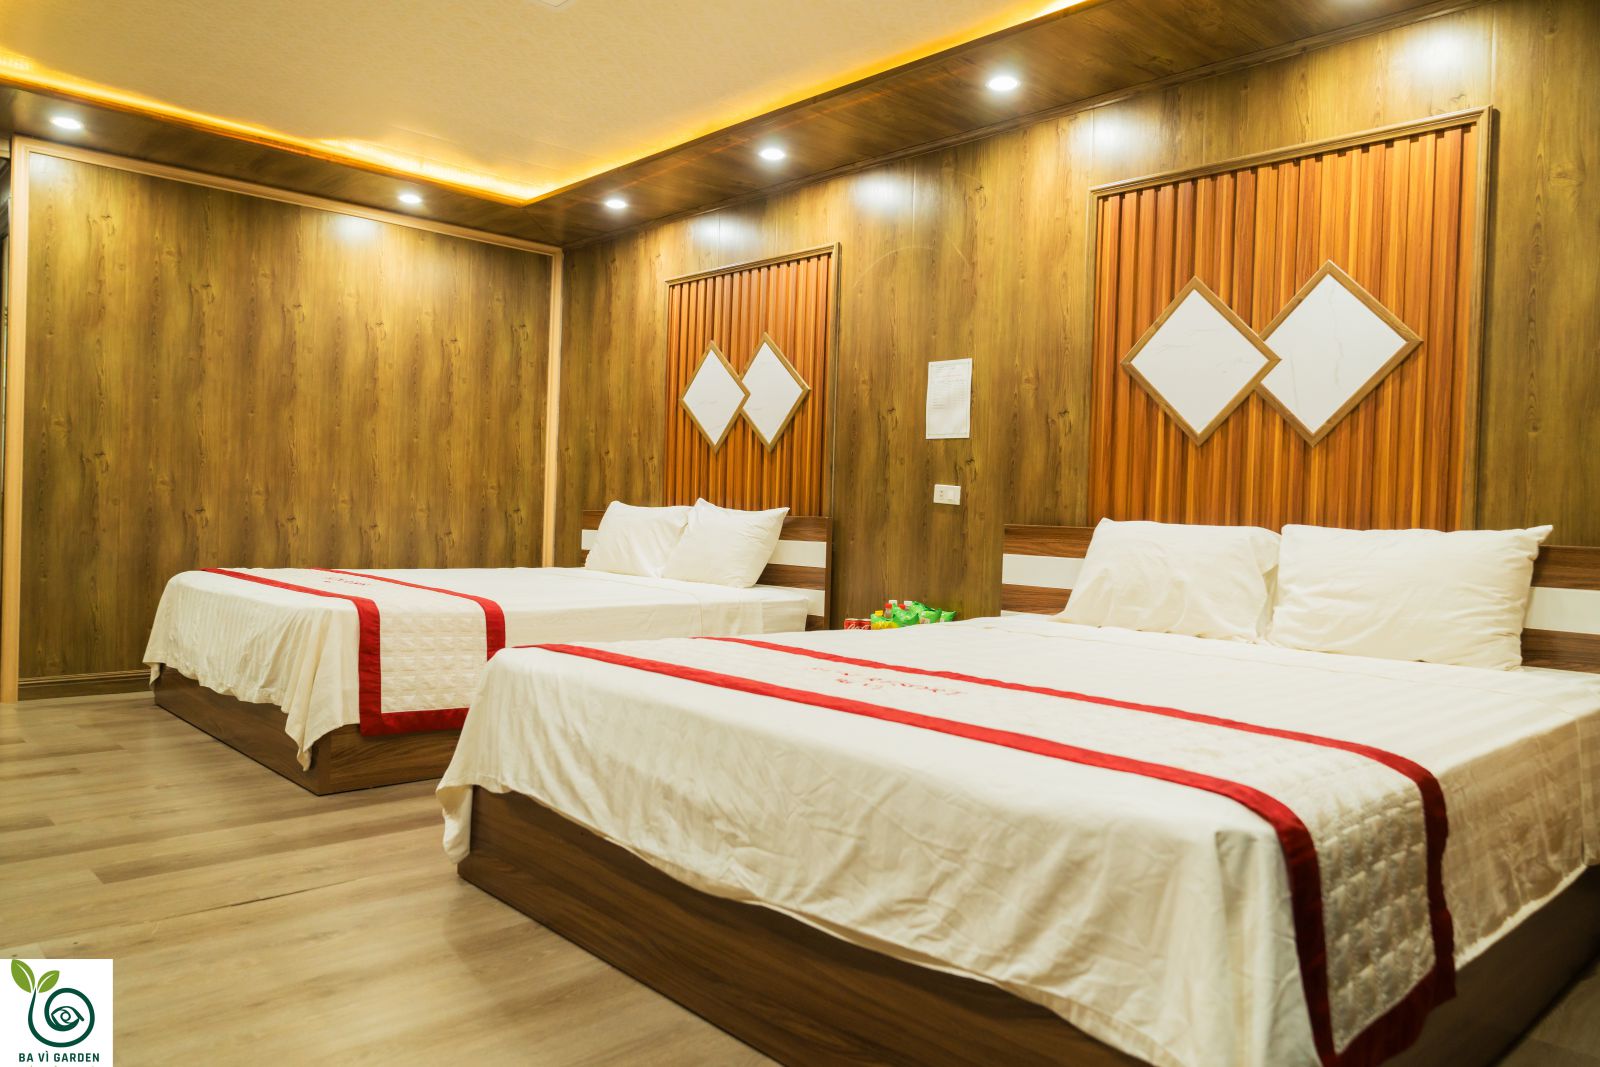 Khách sạn ba sao trung tâm Hải Dương - Lựa chọn ưu tiên trên hàng đầu